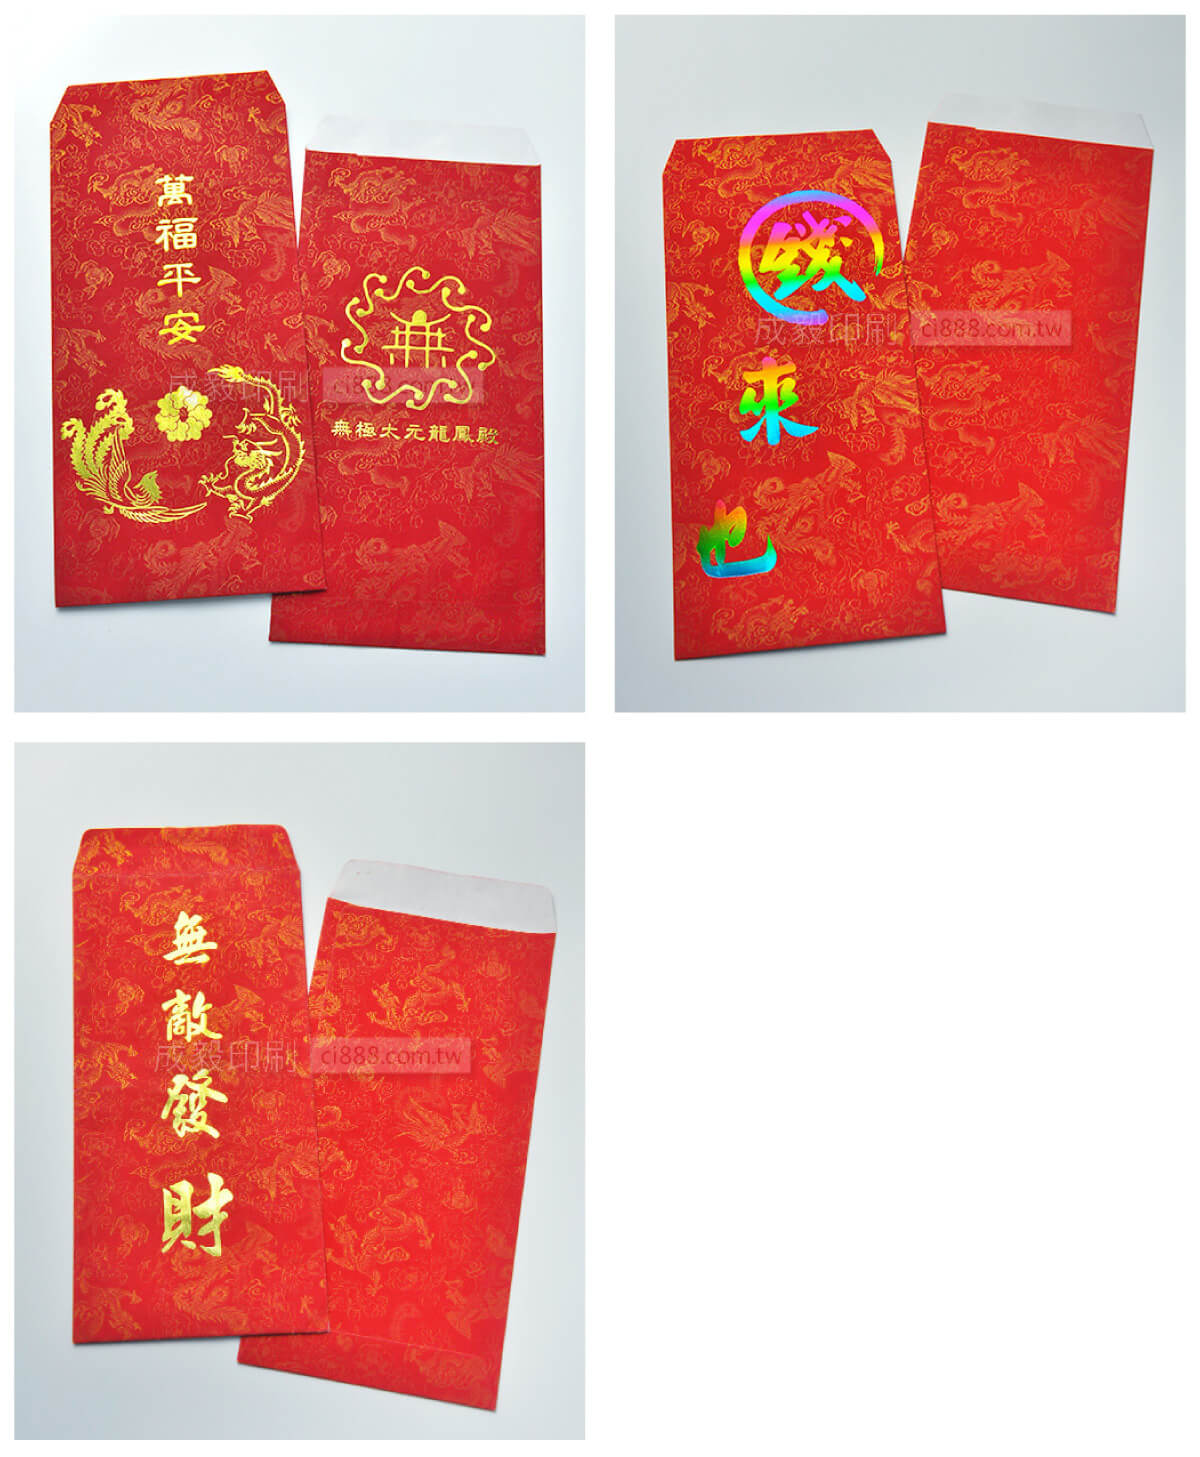 紅包袋 中式紅包 禮金袋 獎金袋 抽獎包 燙金紅包袋 龍鳳紋 客製化印刷 設計印刷 高雄印刷 